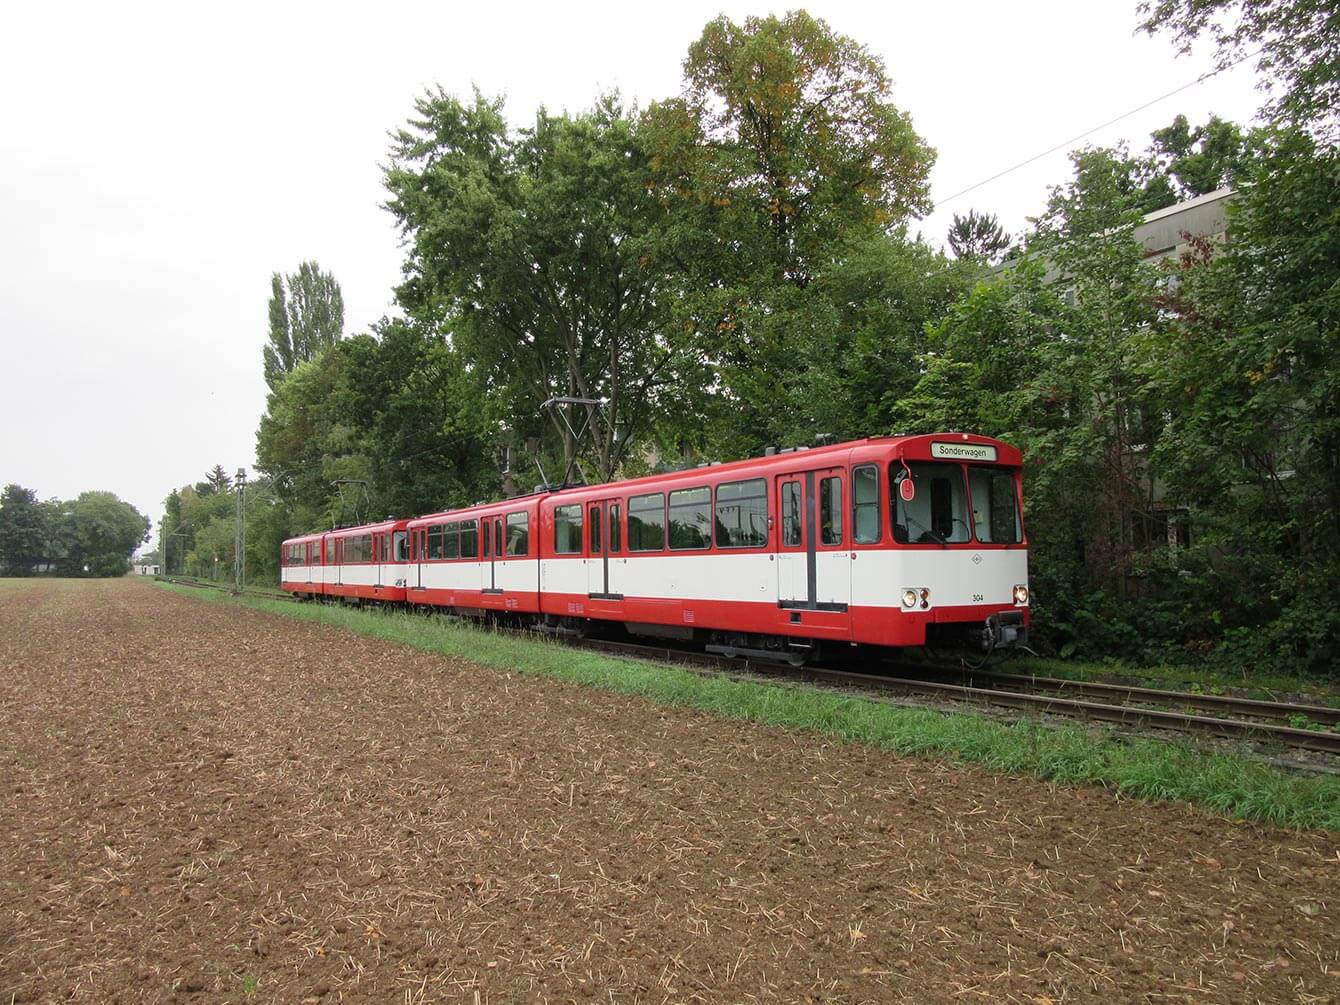 Sonderfahrt Rot-weiß Bahn auf einer Strecke vorbei am Acker und Bäumen